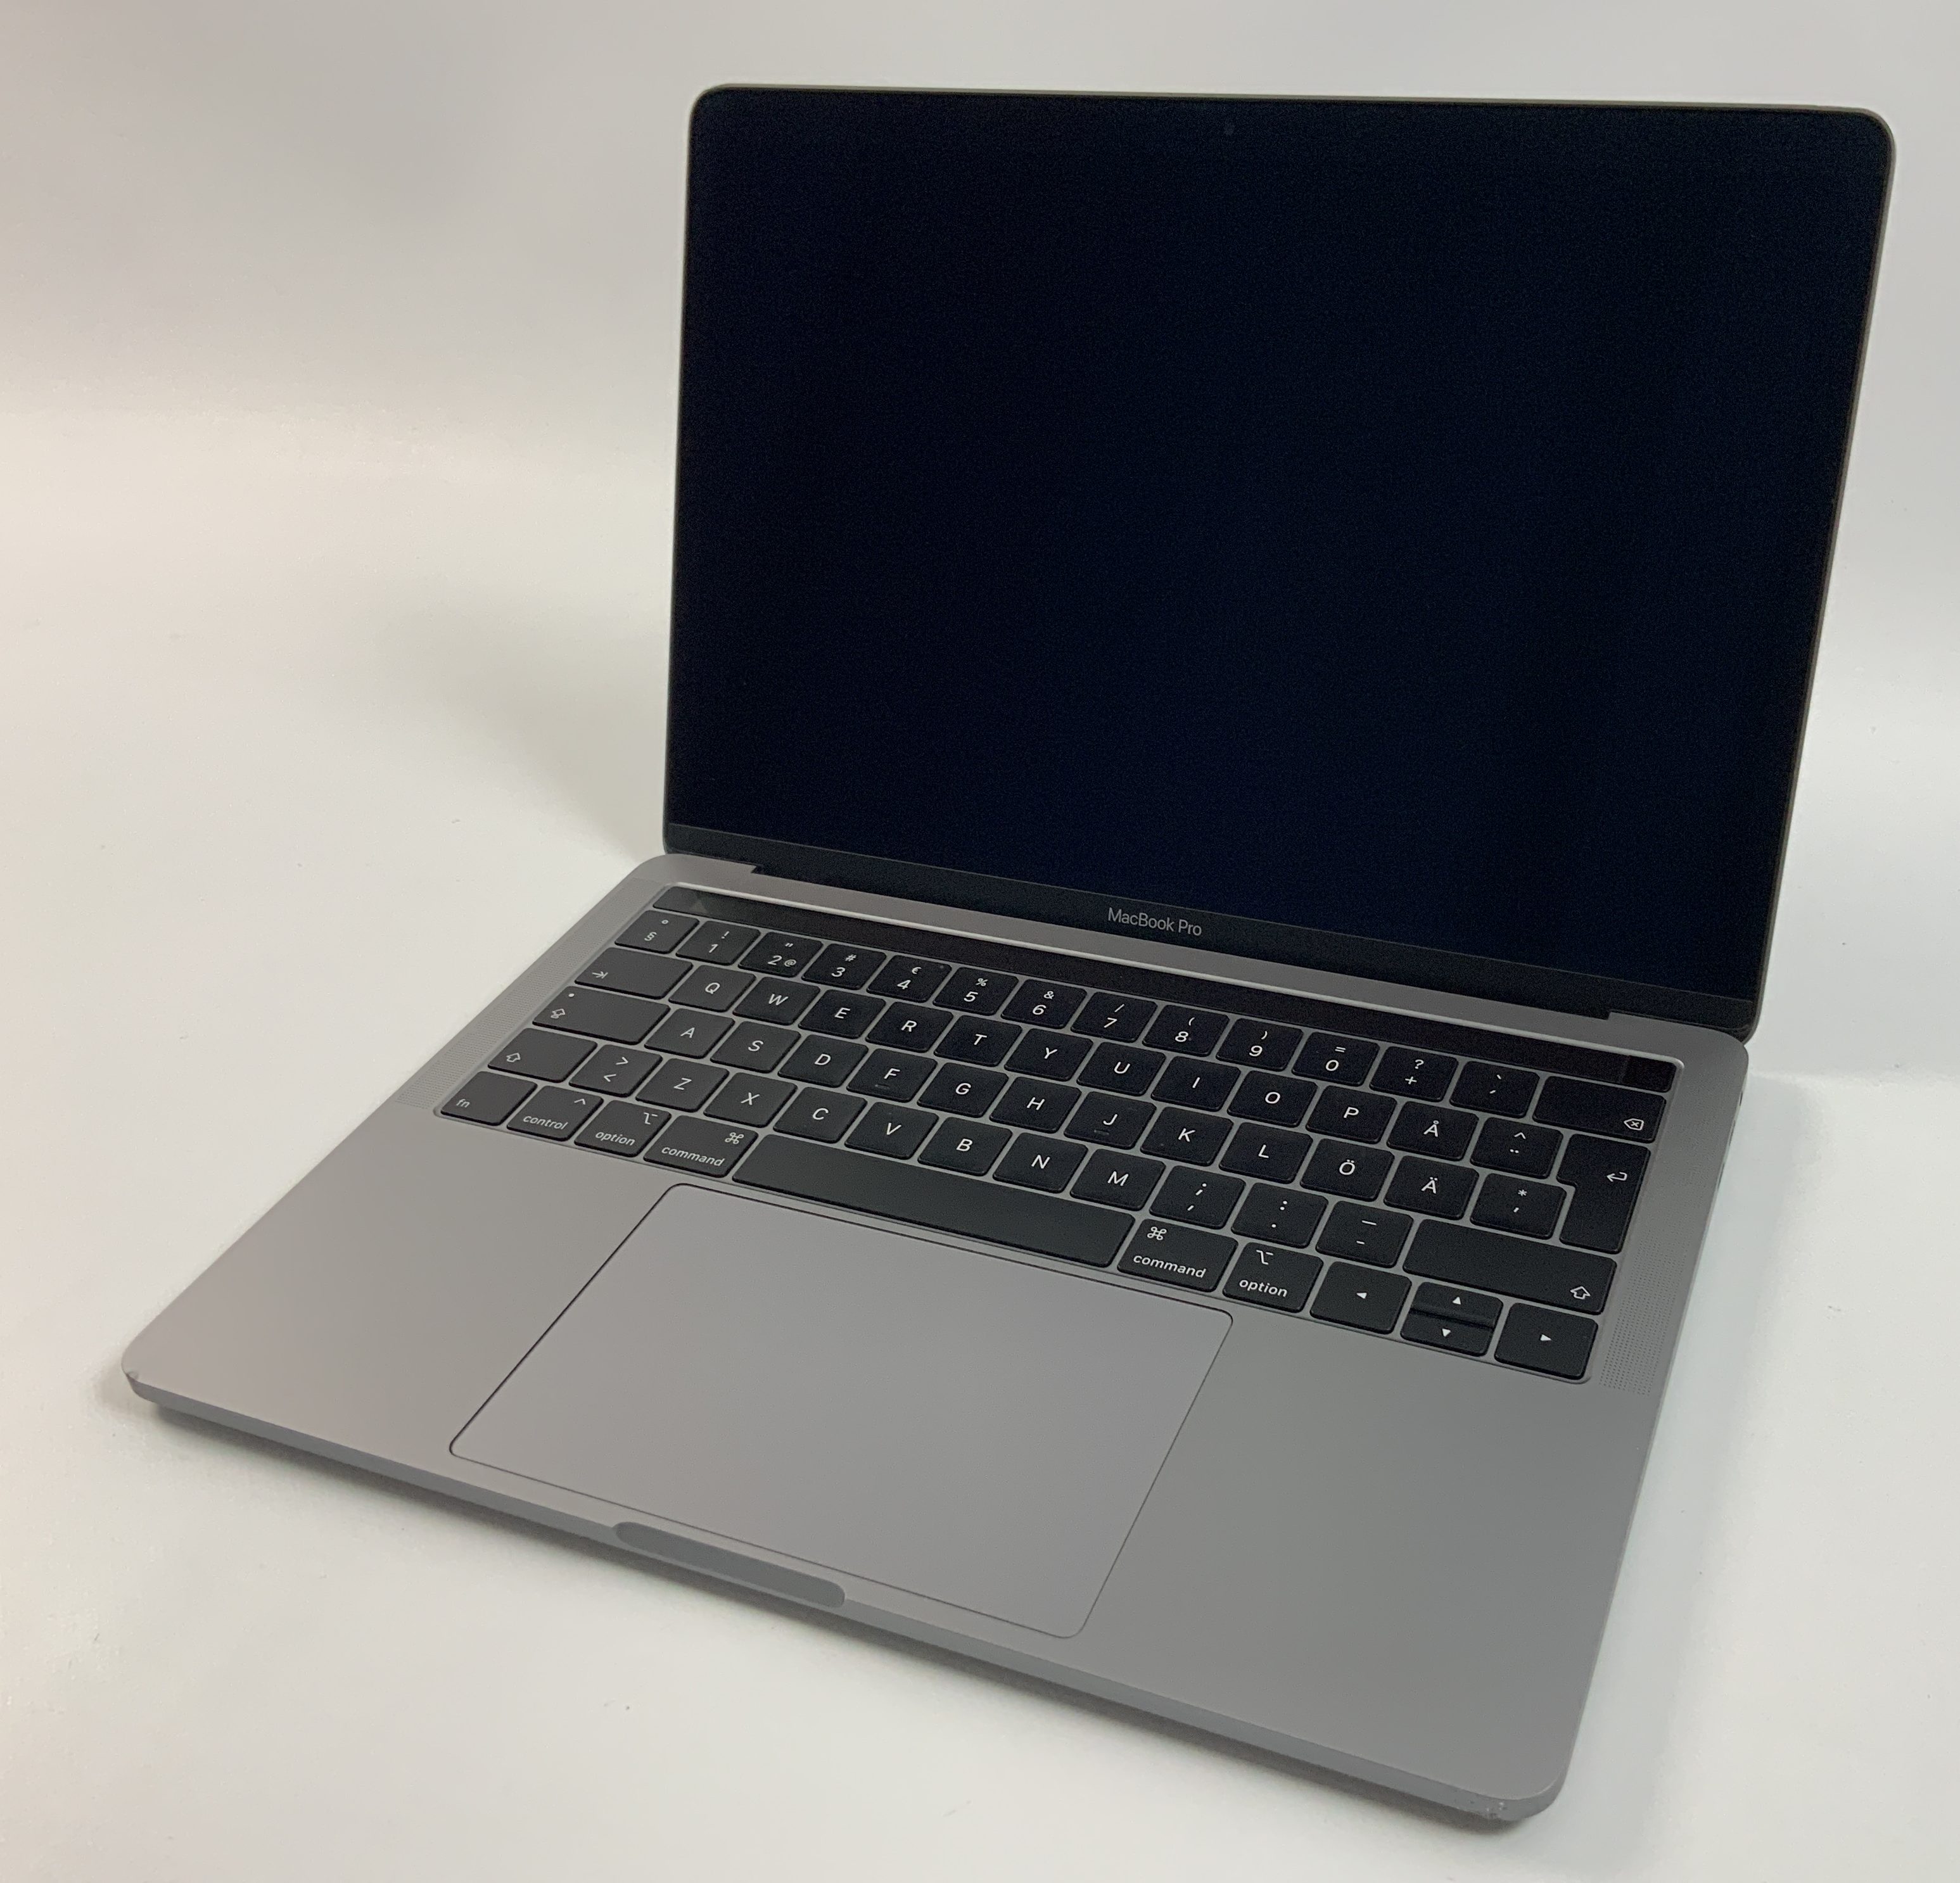 MacBook Pro 13" 4TBT Mid 2019 (Intel Quad-Core i5 2.4 GHz 8 GB RAM 256 GB SSD), Space Gray, Intel Quad-Core i5 2.4 GHz, 8 GB RAM, 256 GB SSD, bild 1